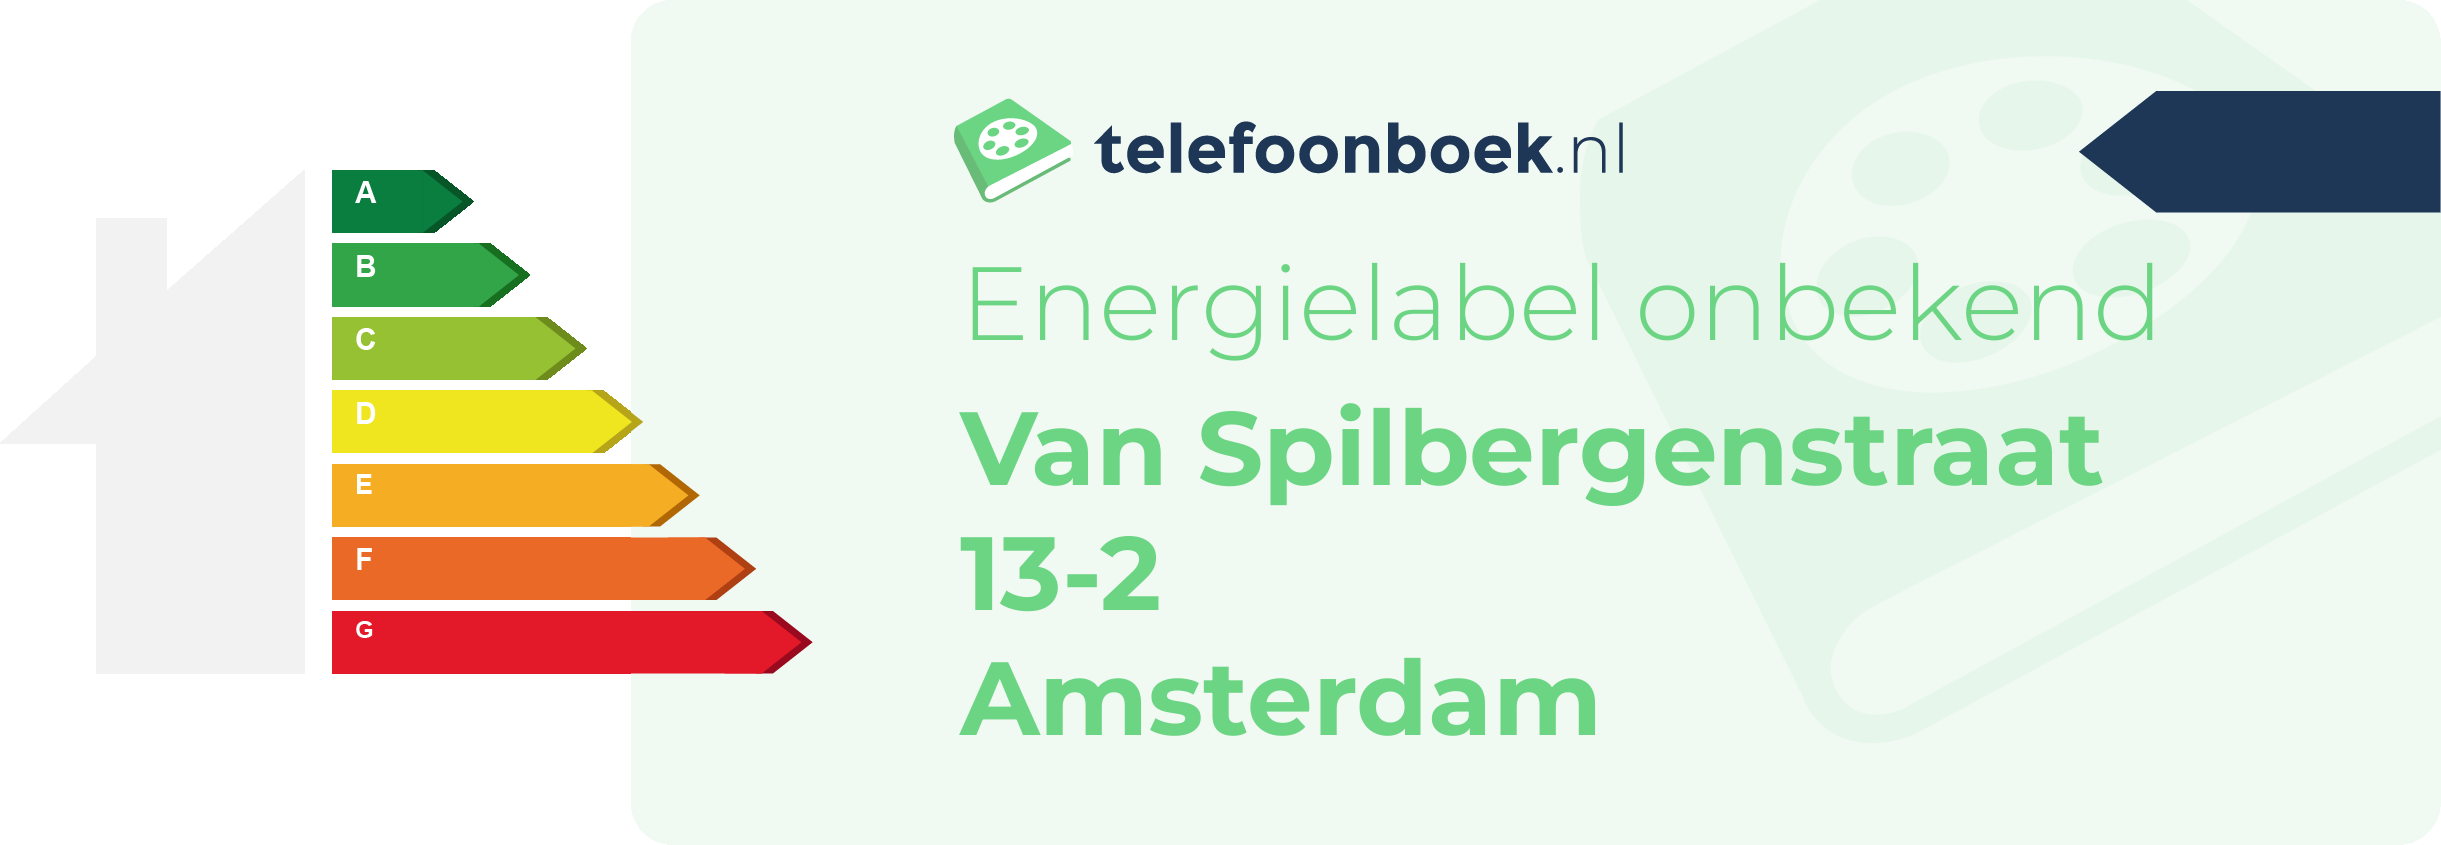 Energielabel Van Spilbergenstraat 13-2 Amsterdam